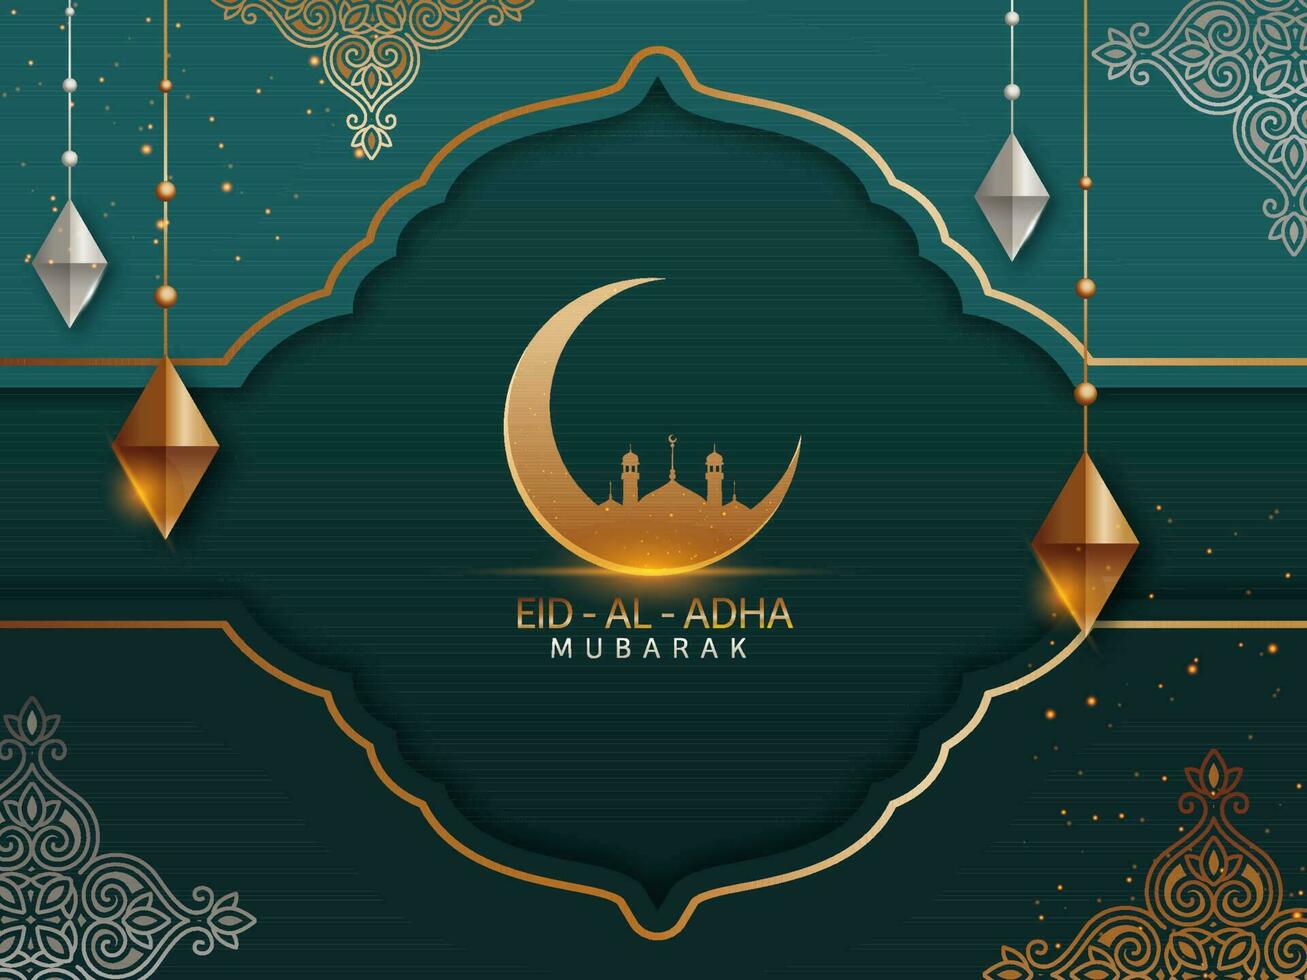 eid-al-adha mubarak begrepp med gyllene halvmåne måne, moské och 3d romb form hänga på kricka bakgrund. vektor